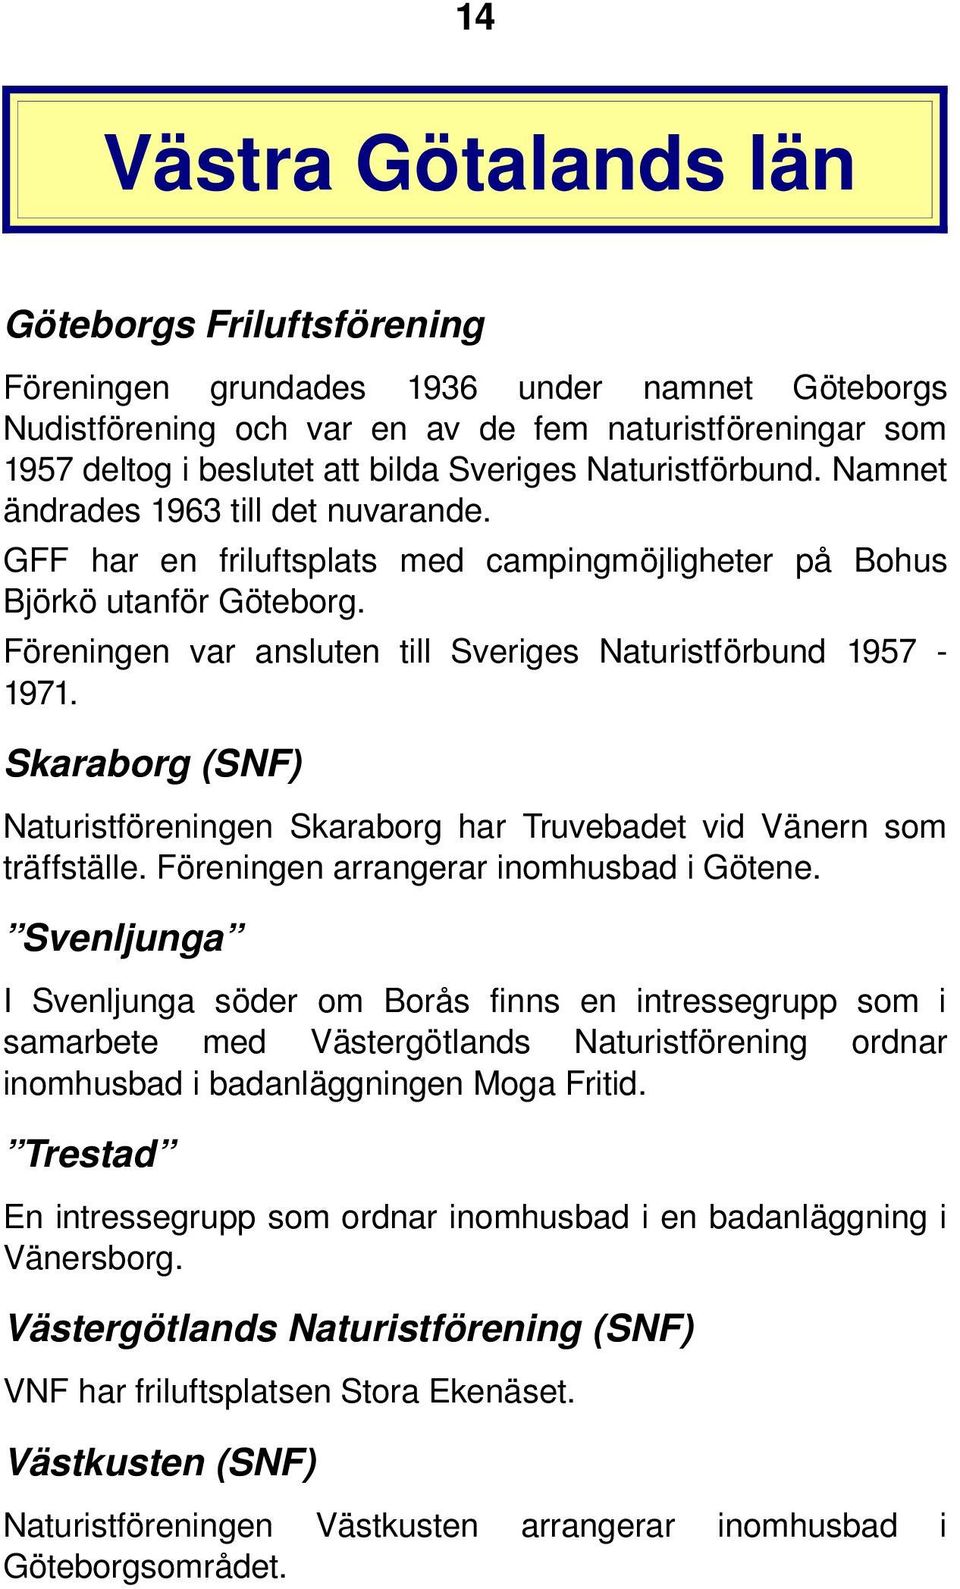 Föreningen var ansluten till Sveriges Naturistförbund 1957 1971. Skaraborg (SNF) Naturistföreningen Skaraborg har Truvebadet vid Vänern som träffställe. Föreningen arrangerar inomhusbad i Götene.